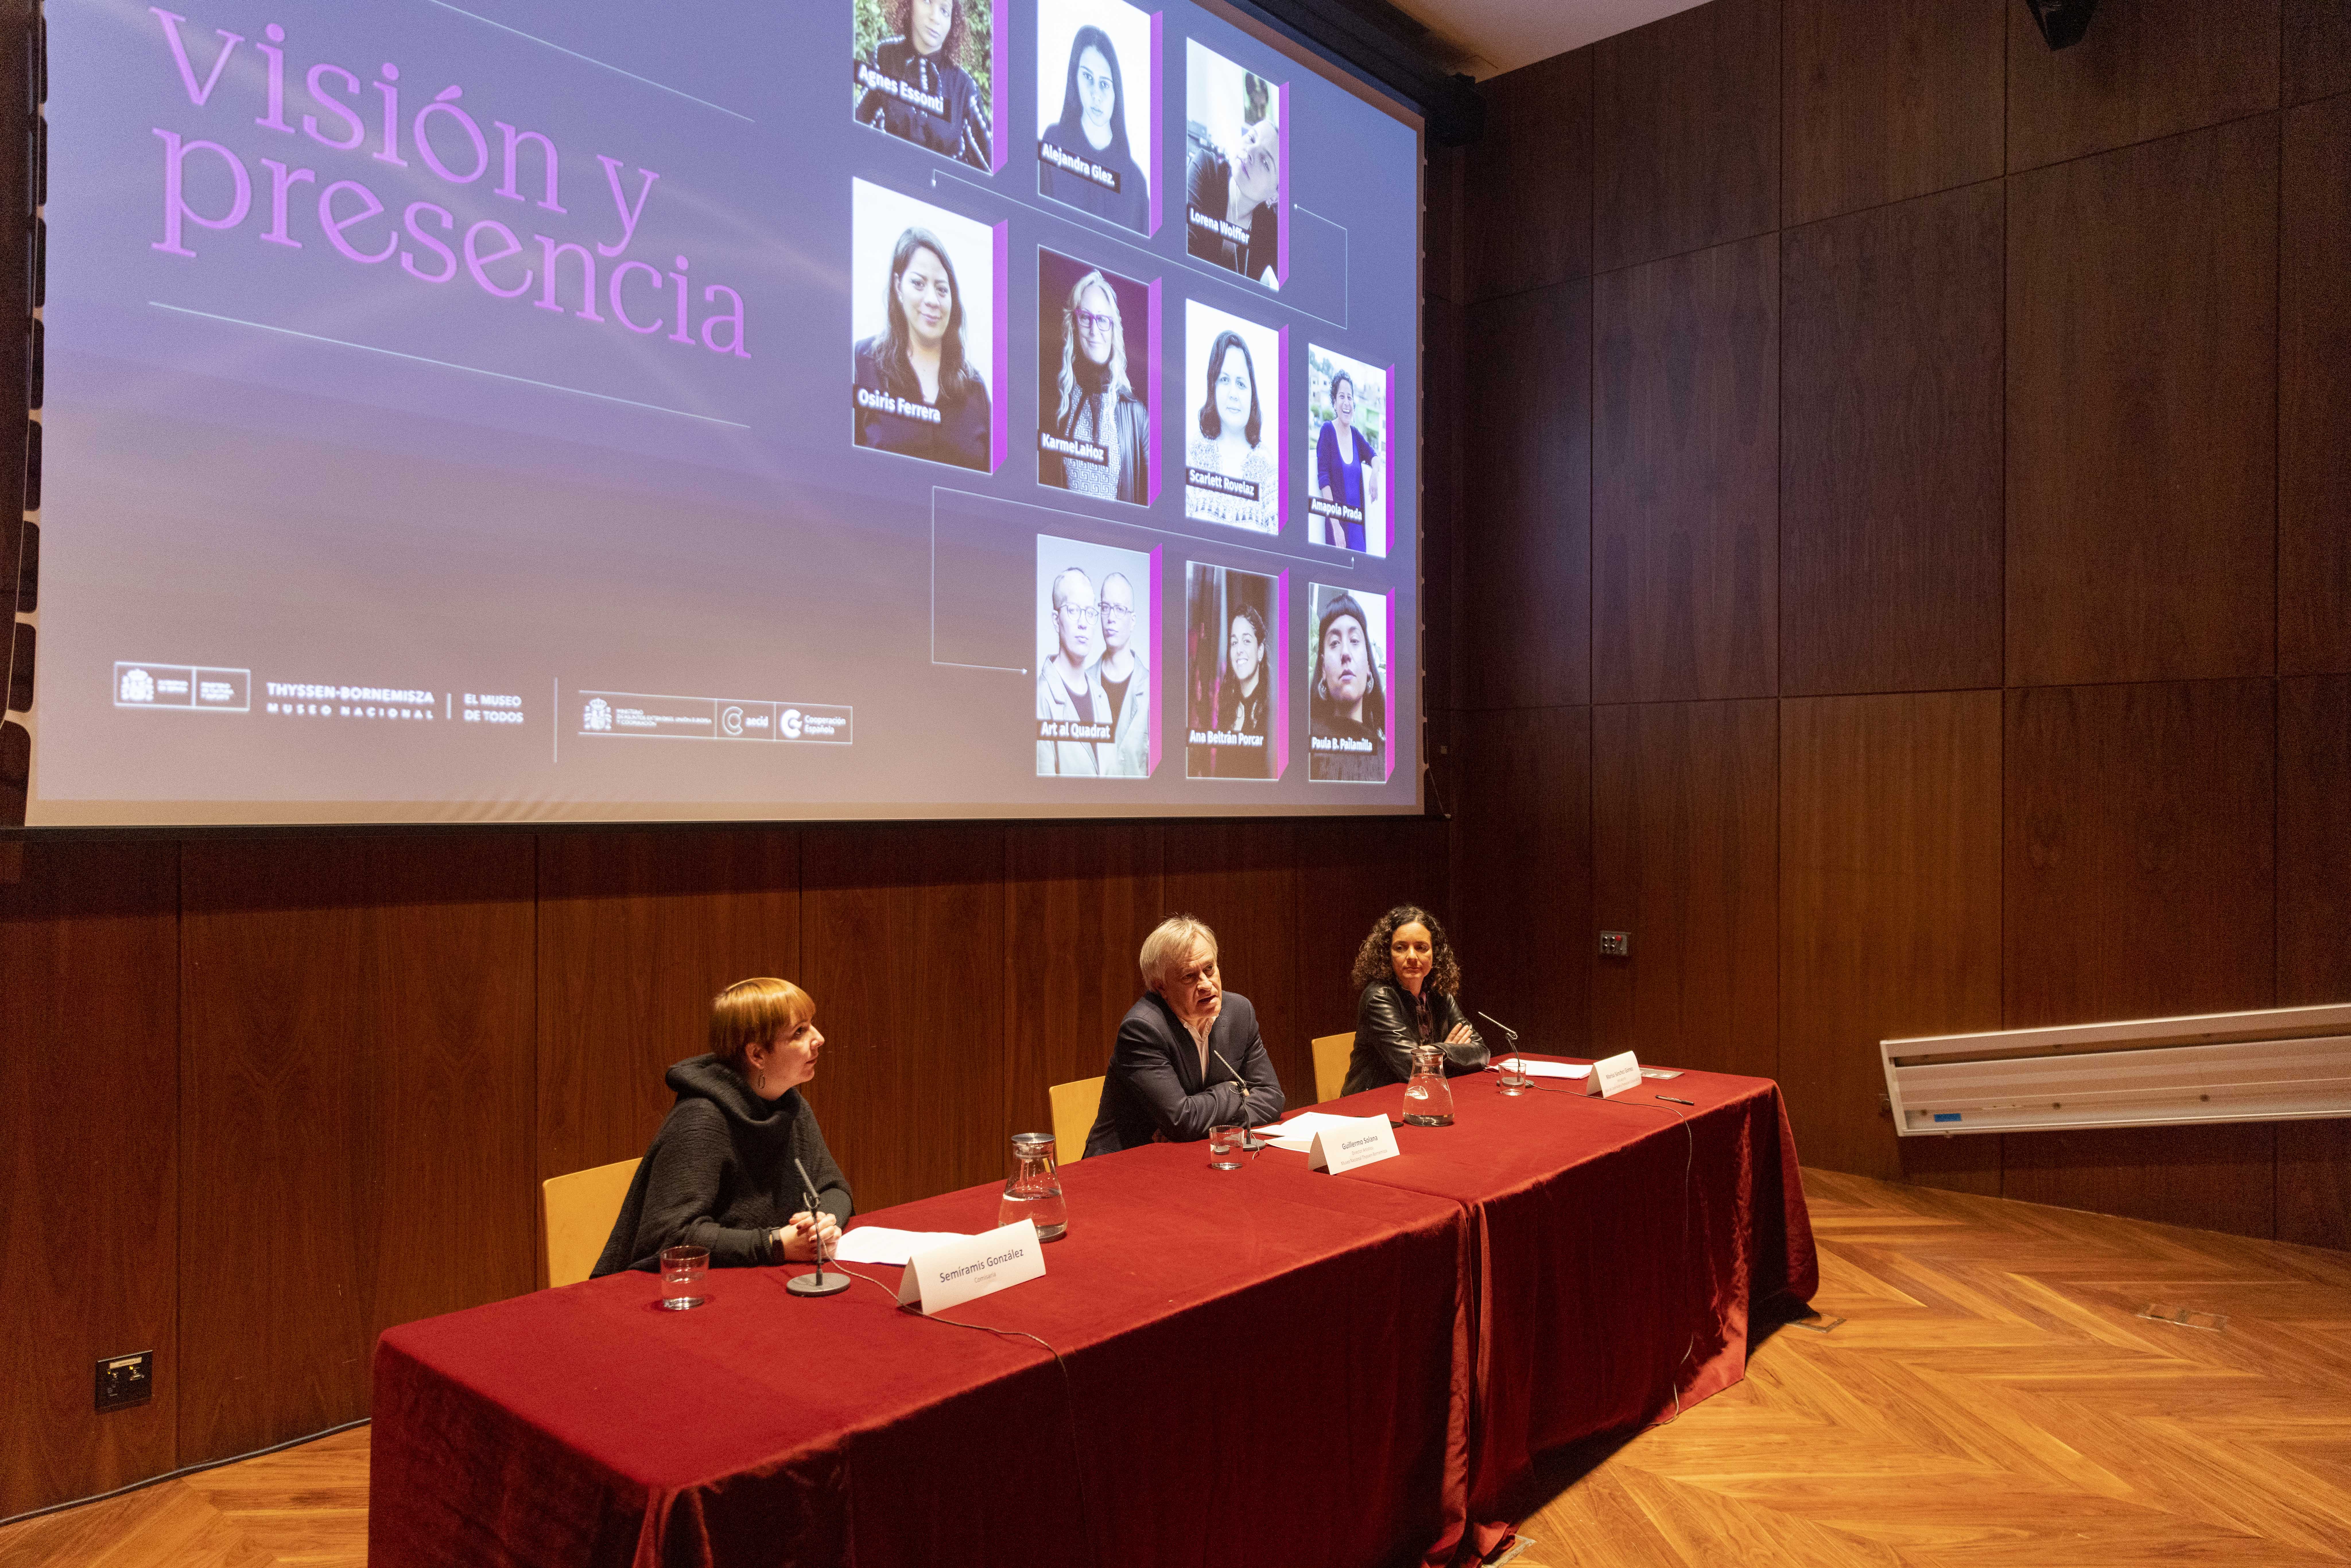 Visión y presencia, las performances de las creadoras latinoamericanas en el Thyssen